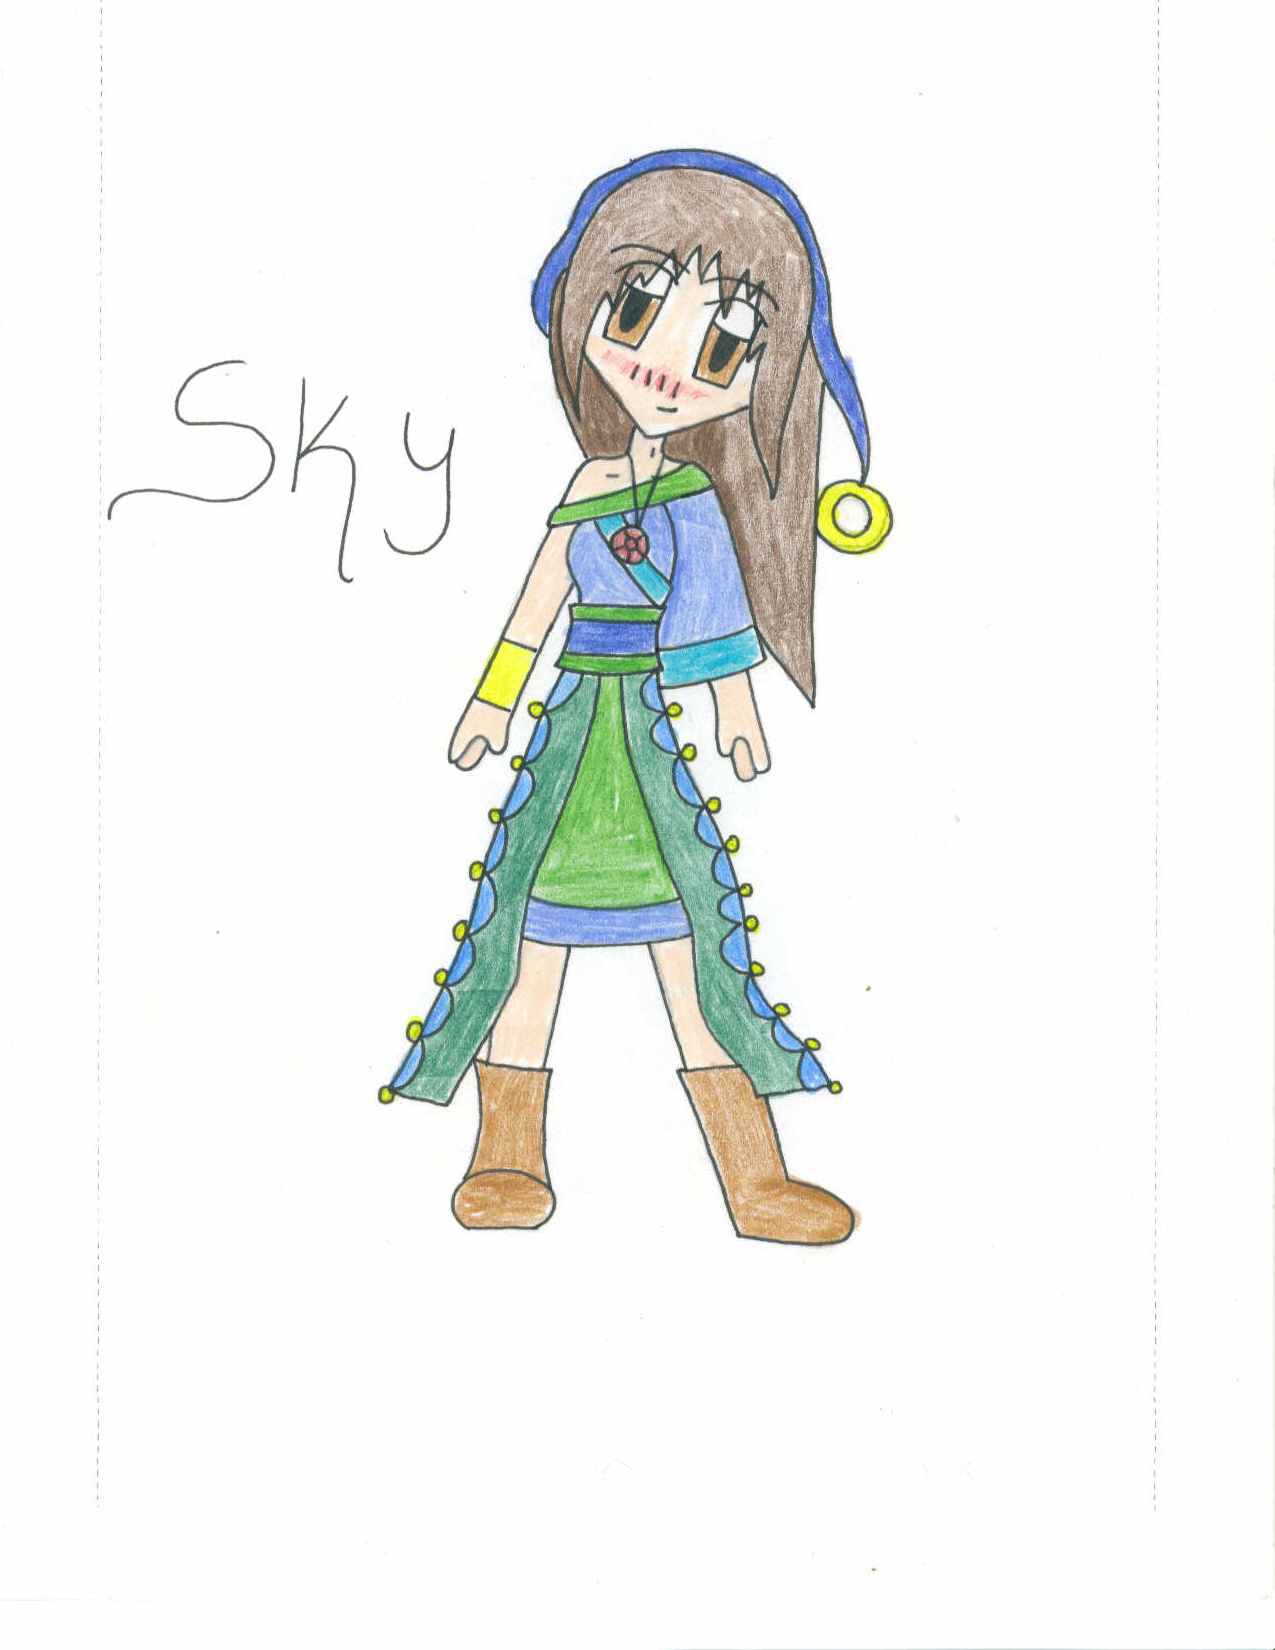 Sky by Ziya